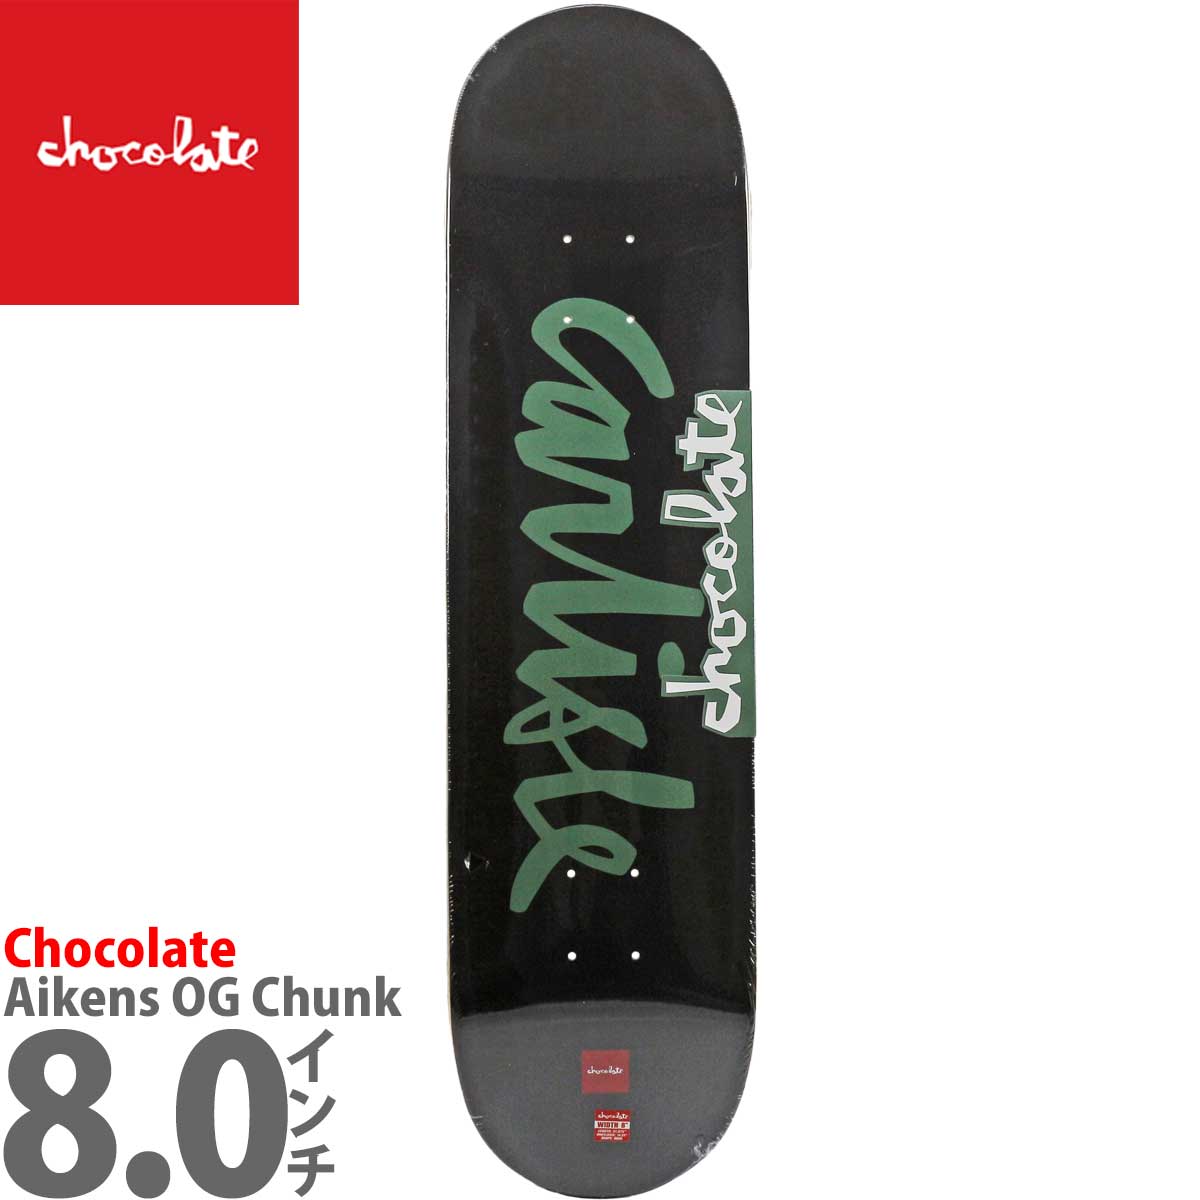 チョコレート 8.0インチ スケボー デッキ Chocolate Skateboards Pro Aikens OG Chunk Deck  スケートボード ブランド スケボーデッキ おしゃれ ブランド